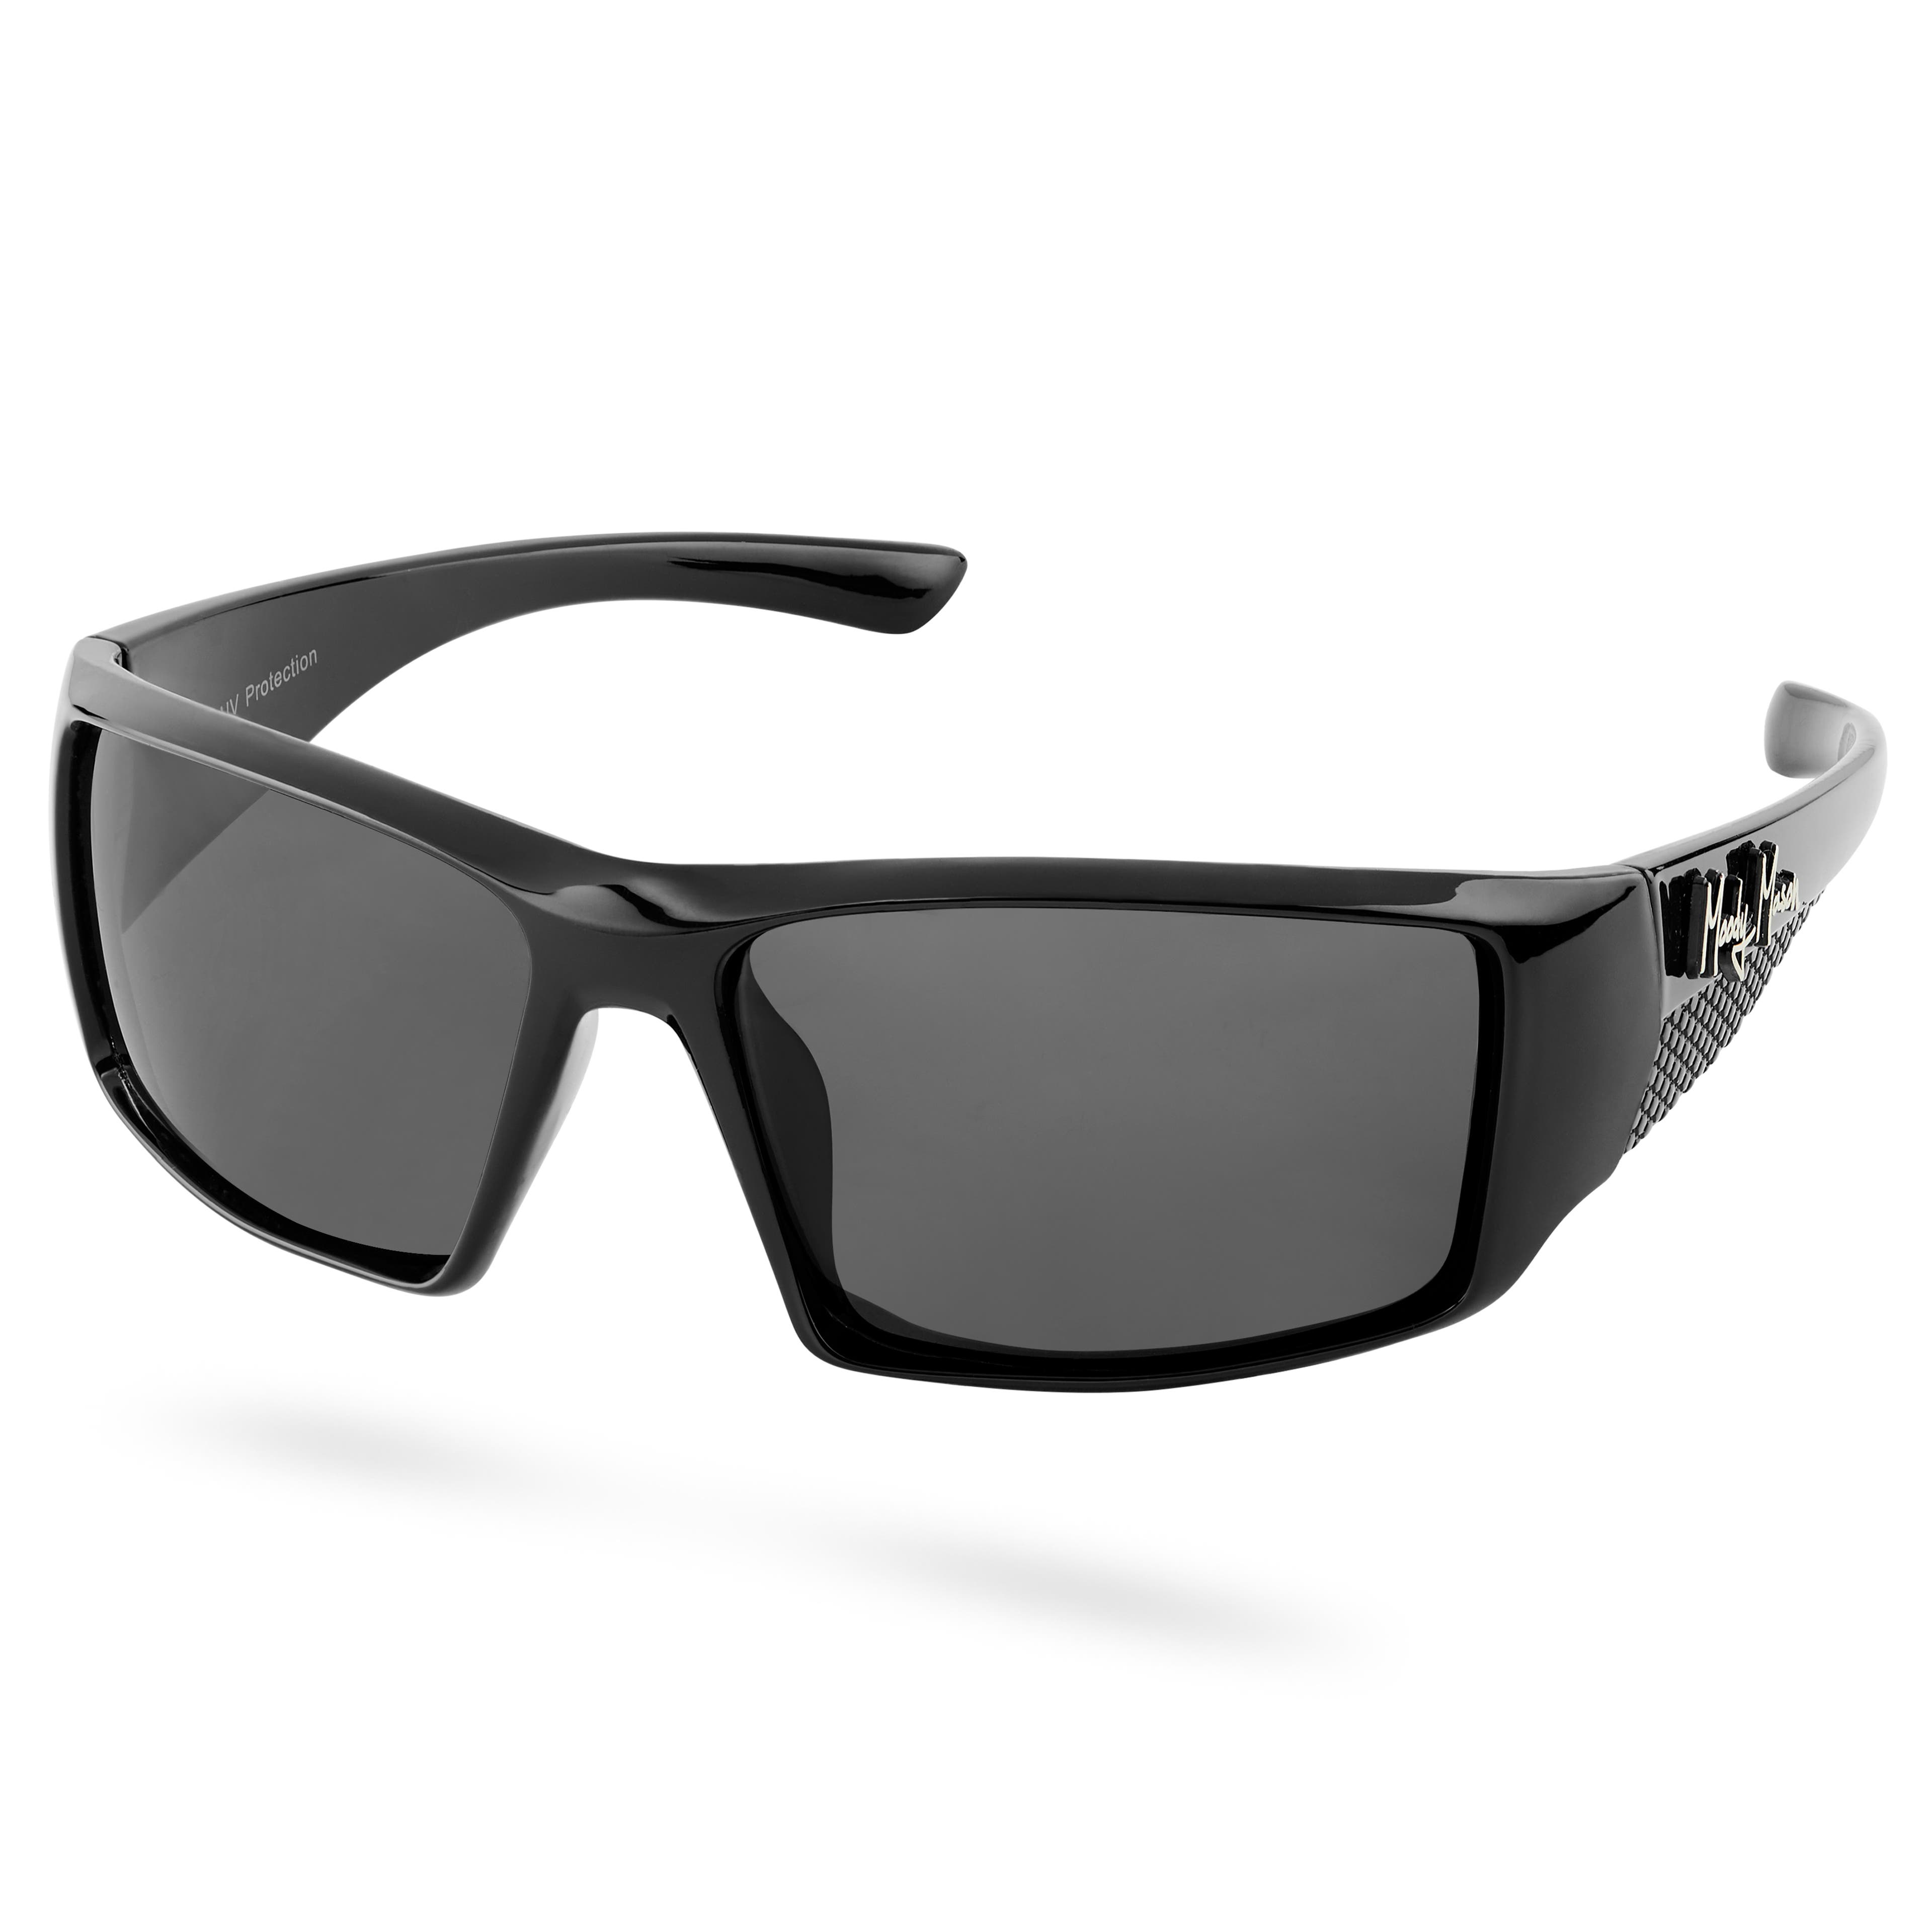 Polarizačné slnečné okuliare Mick Verge v čiernej a šedej farbe - kategória 3.5